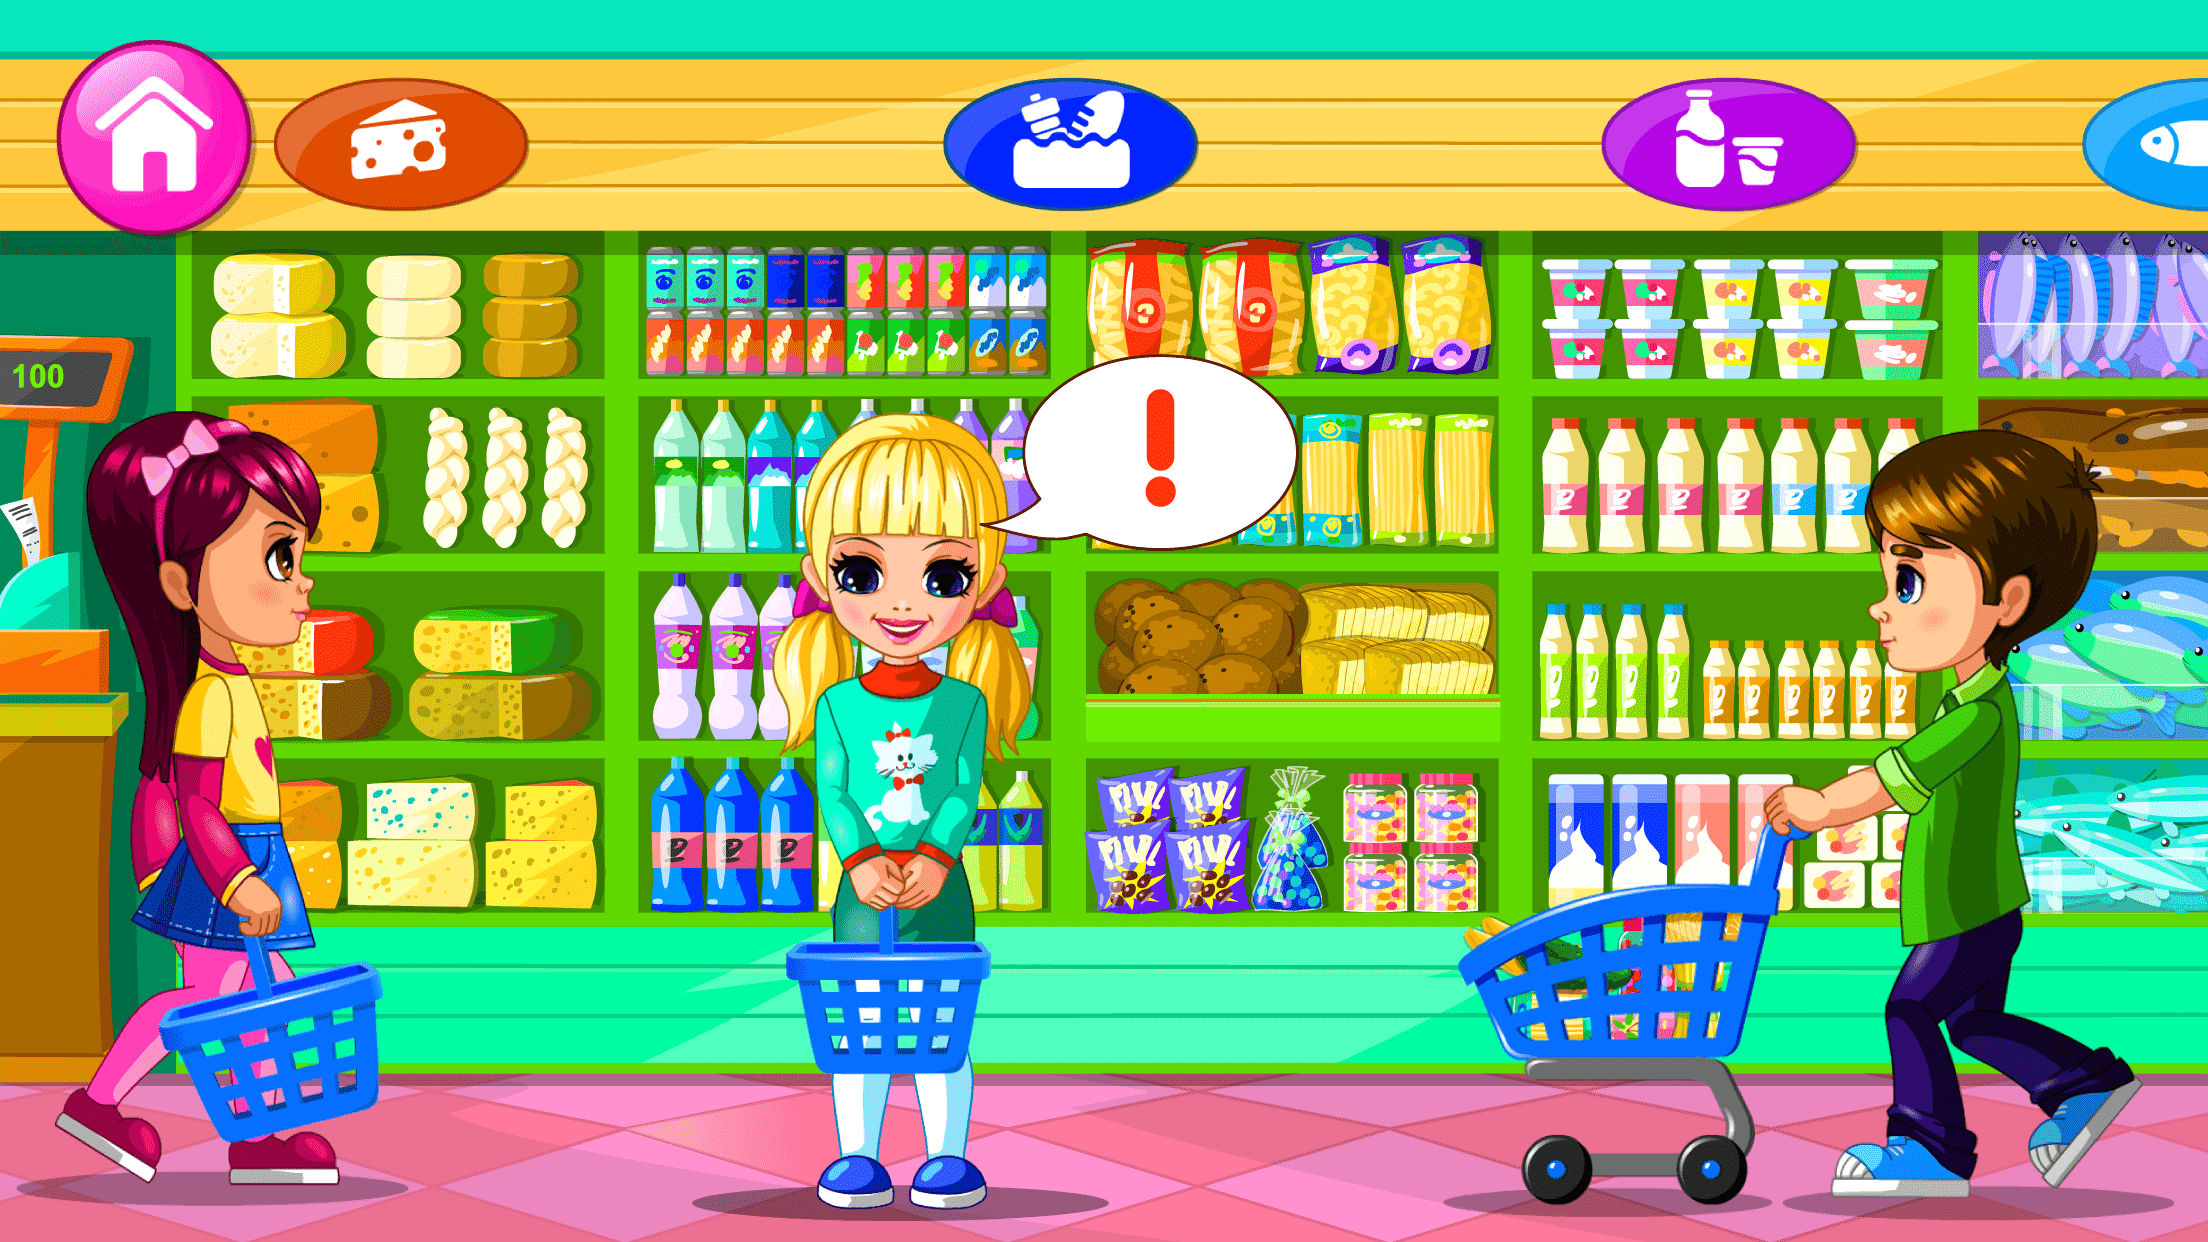 Screenshot 1 of सुपरमार्केट खेल 2 1.54